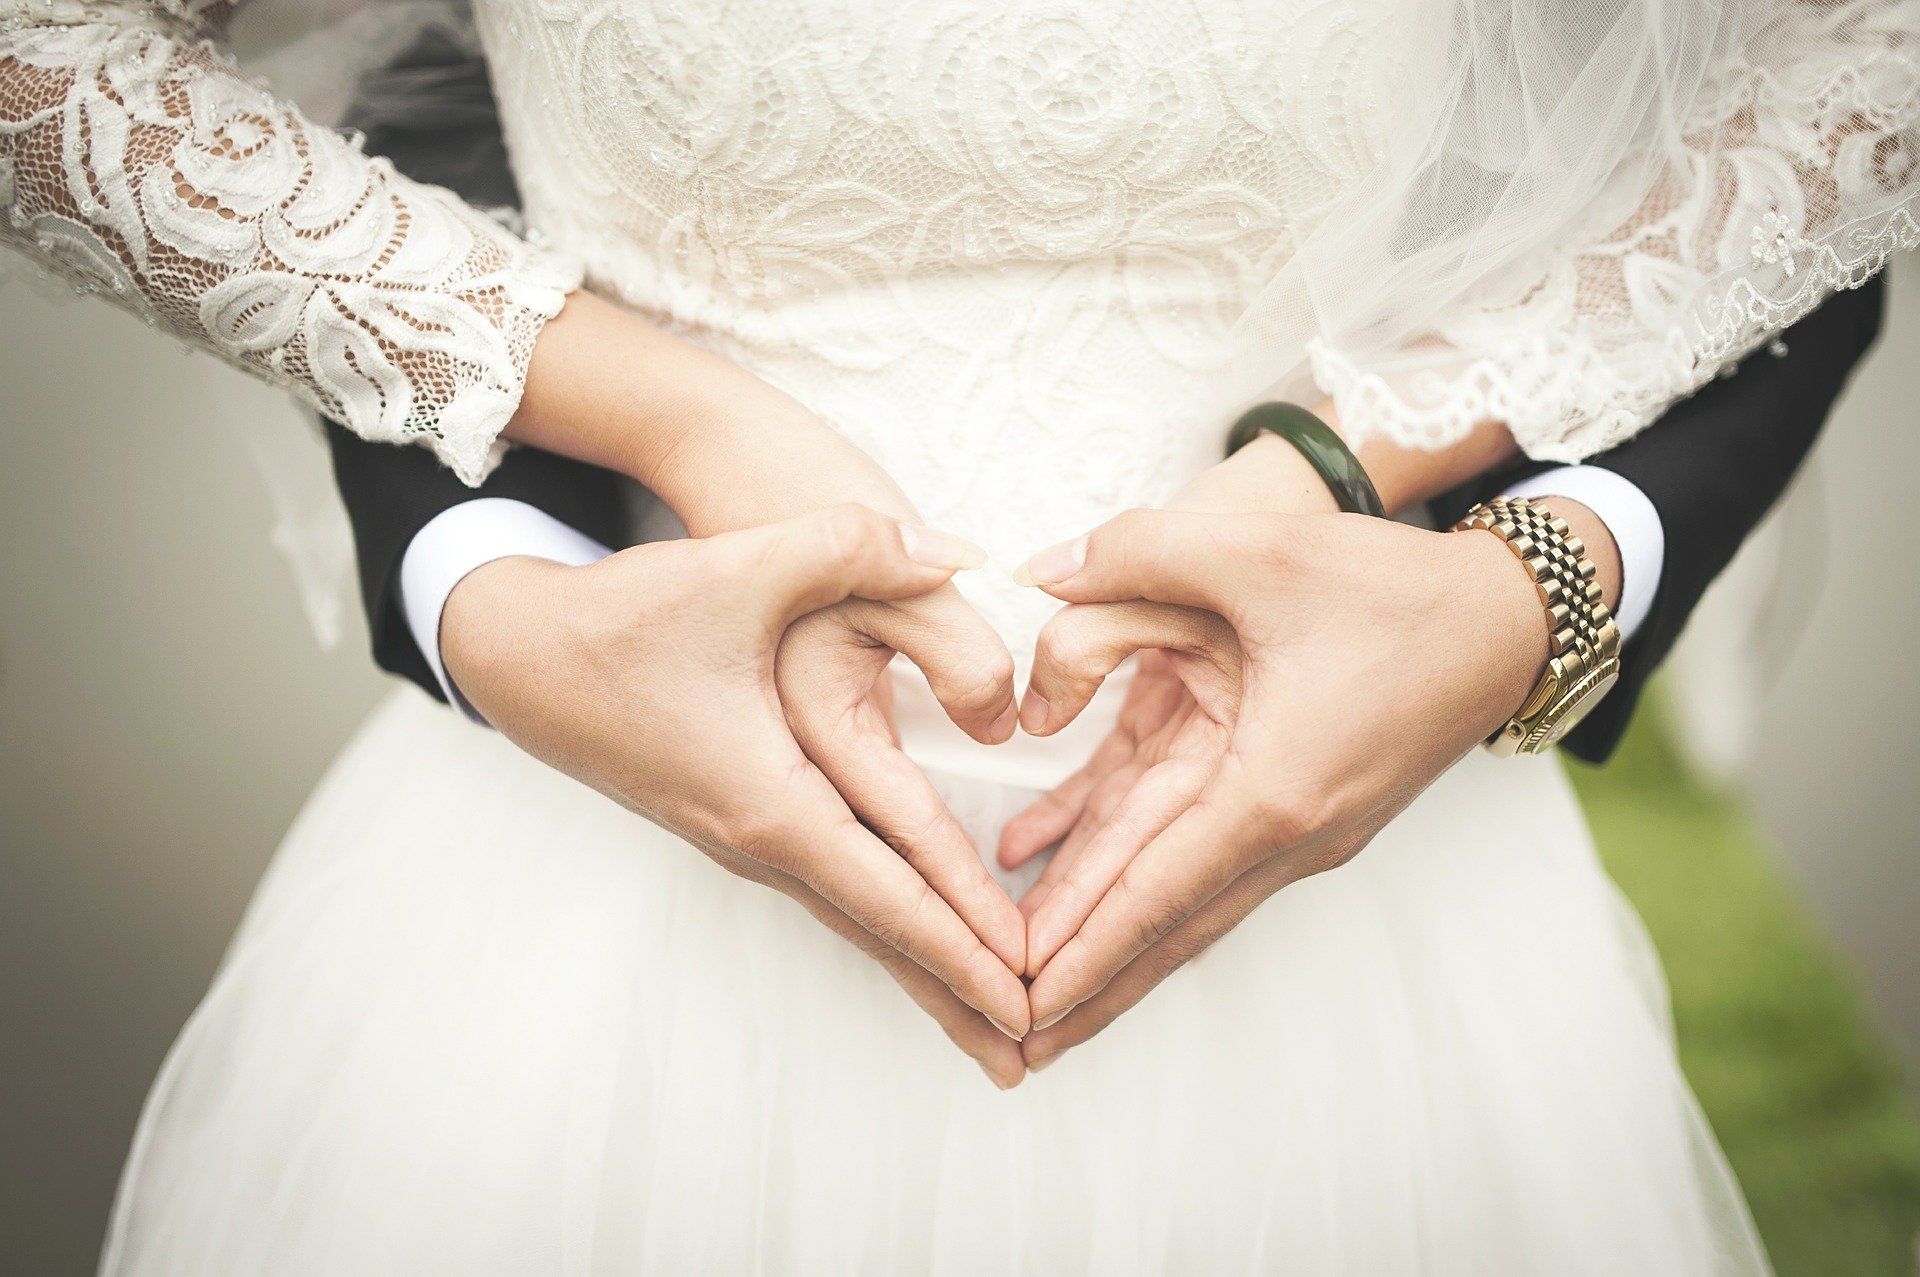 Svatba lásku nezachrání. Jak poznat přechozený vztah?